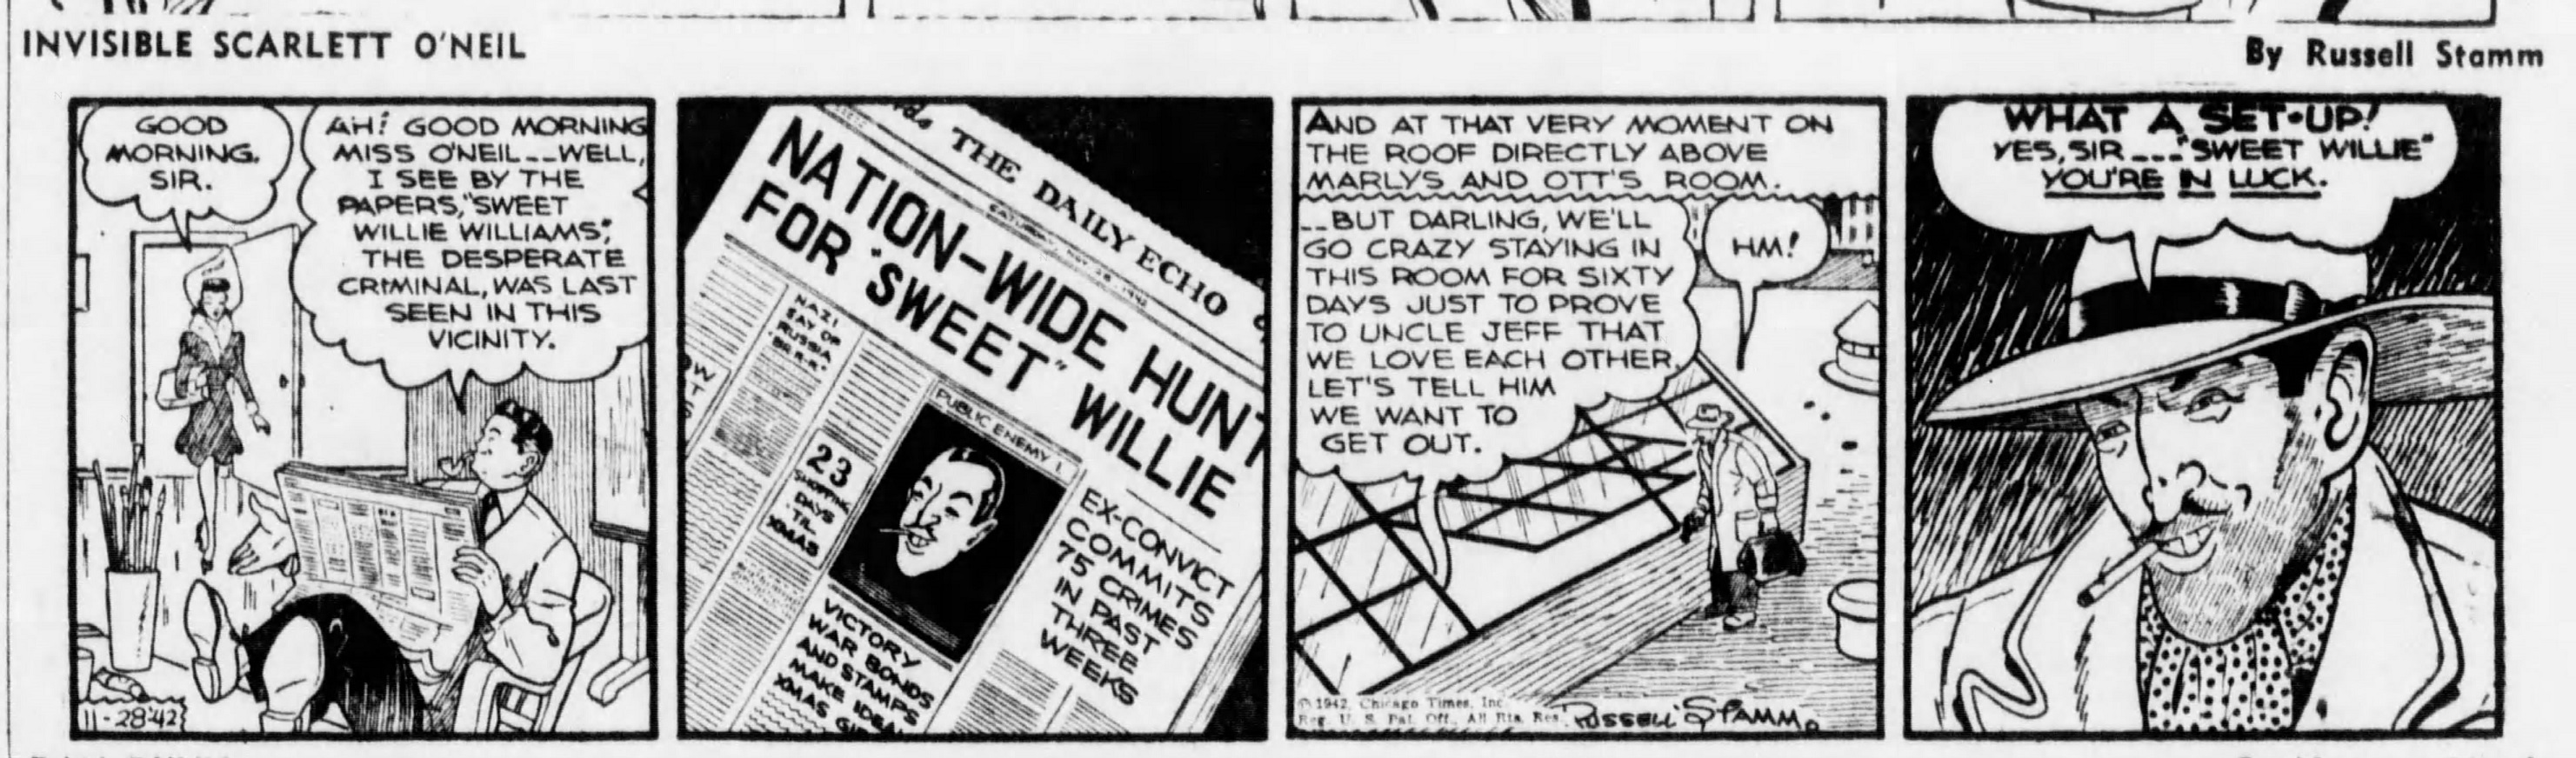 The_Brooklyn_Daily_Eagle_Sat__Nov_28__1942_(6).jpg